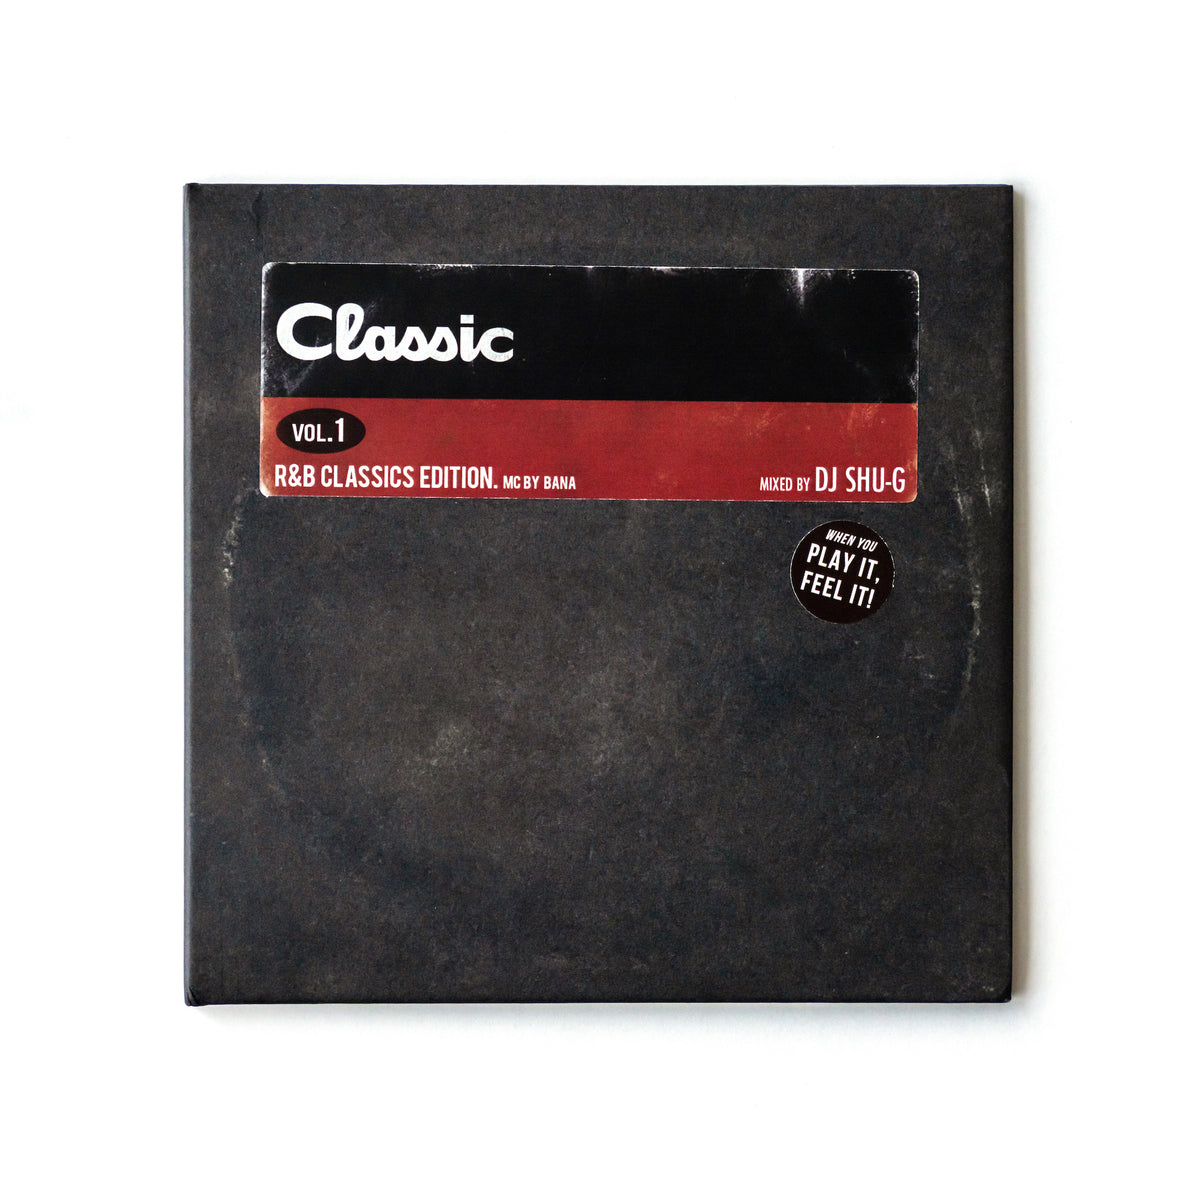 Classics Vol.1 -R&B Classics Edition-